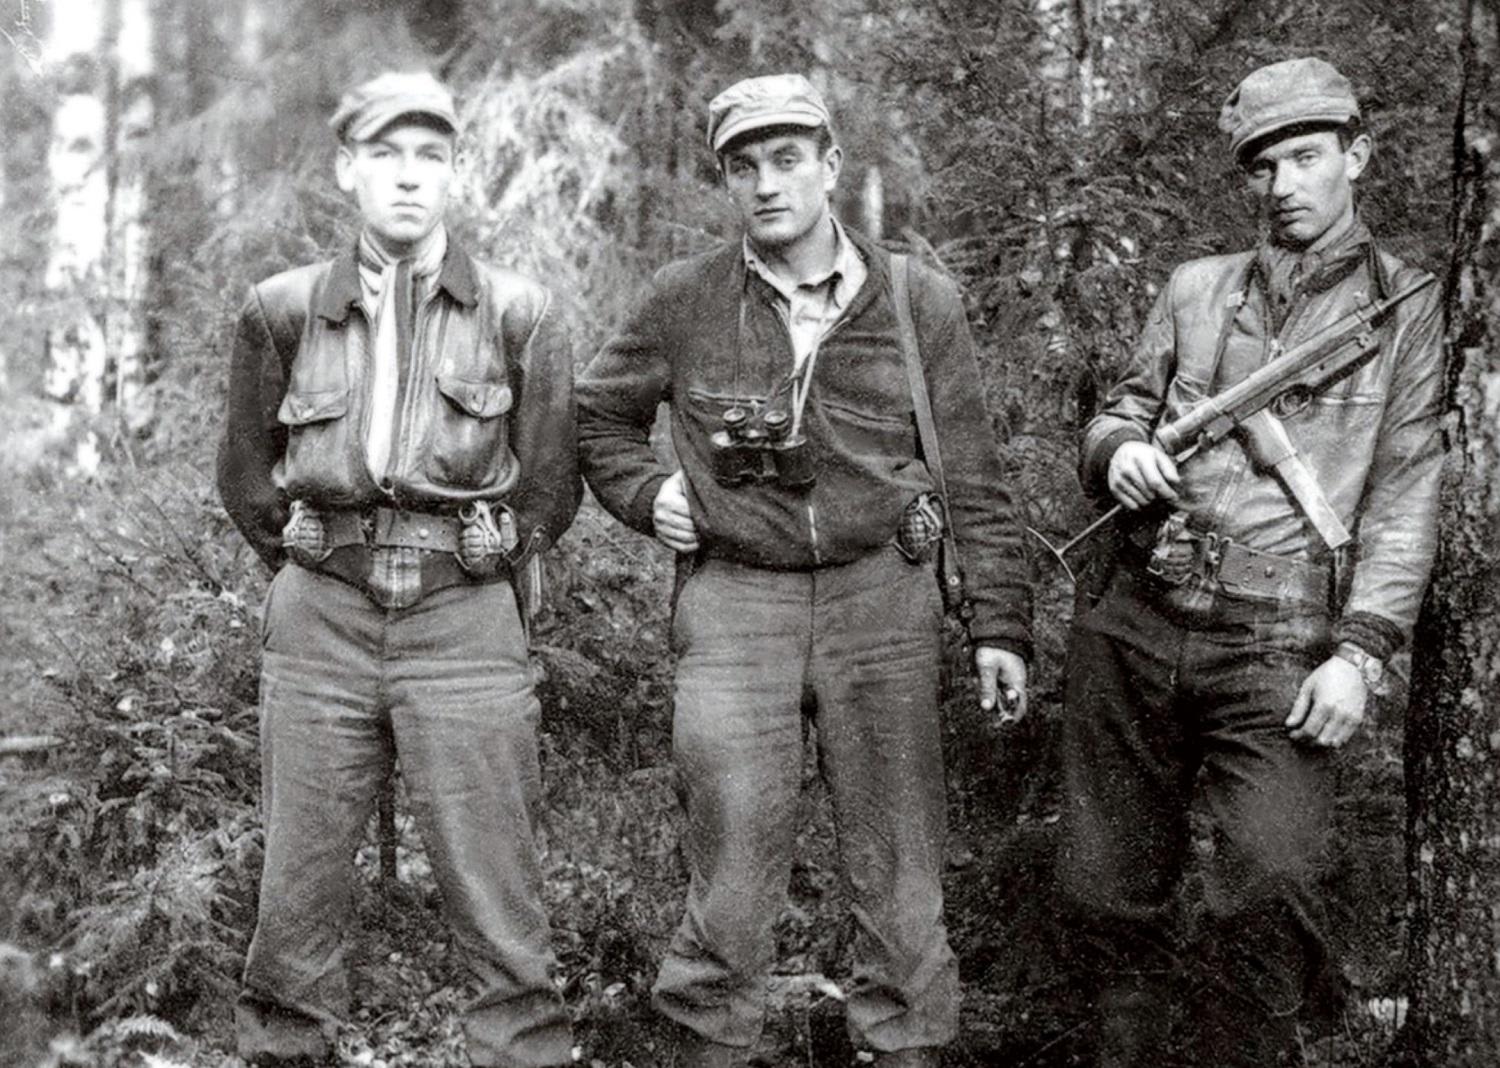 Anti-Soviet Lithuanian guerrillas (from left to right) Klemensas Širvys-Sakalas, Juozas Lukša-Skirmantas and Benediktas Trumpys-Rytis in the forest circa 1949.